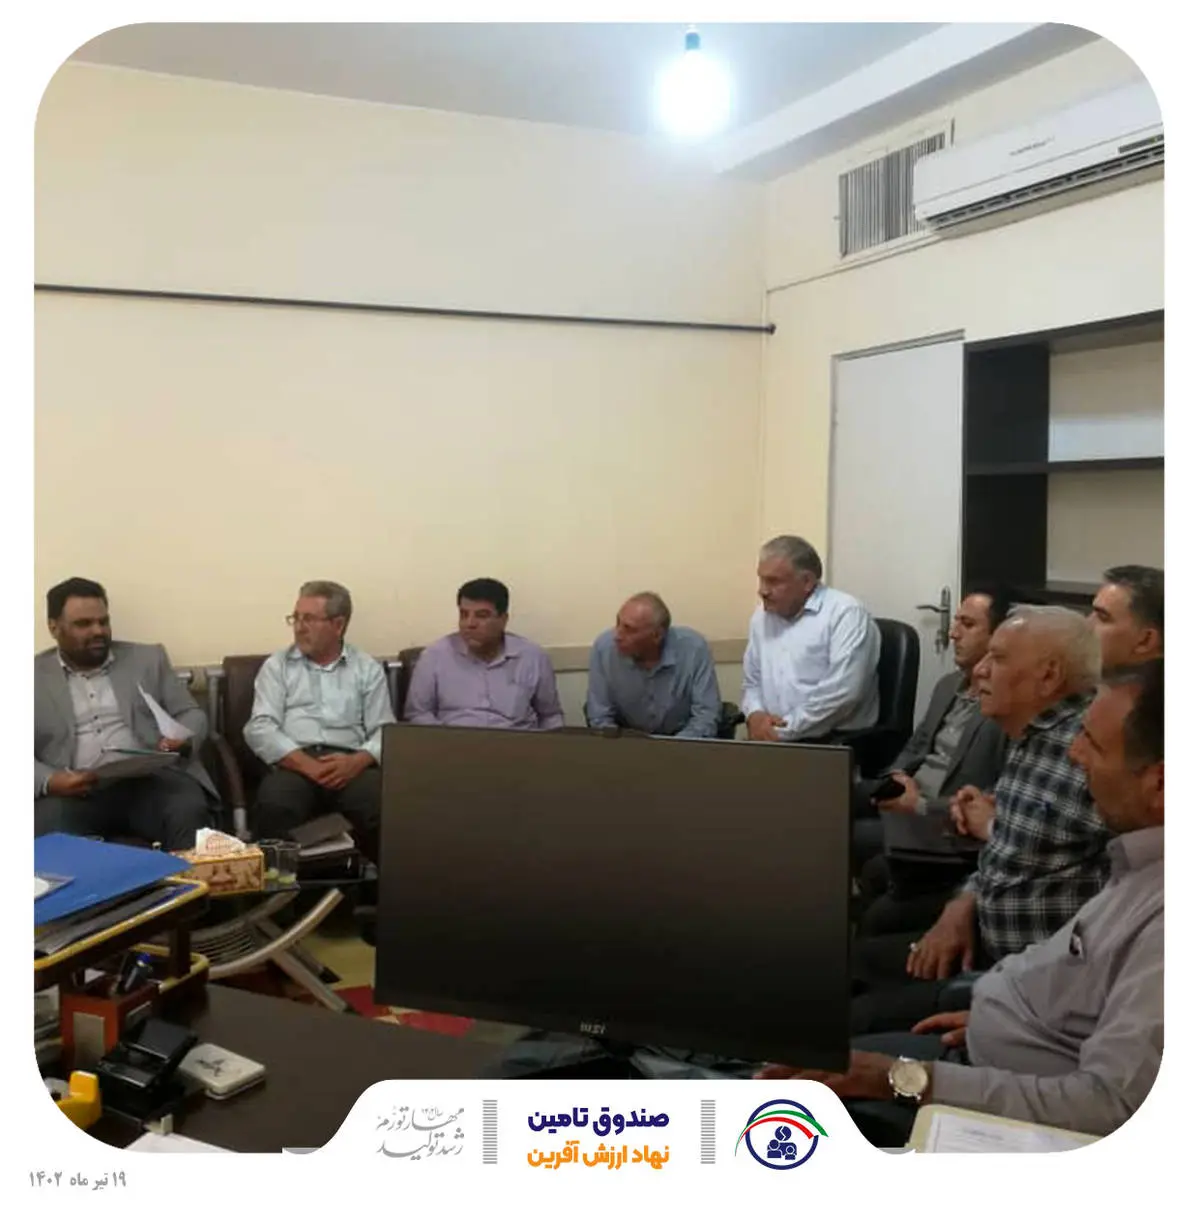  برگزاری اولین دوره آموزشی افسران تحقیق شعب صندوق تامین خسارت های بدنی در شعبه استان فارس